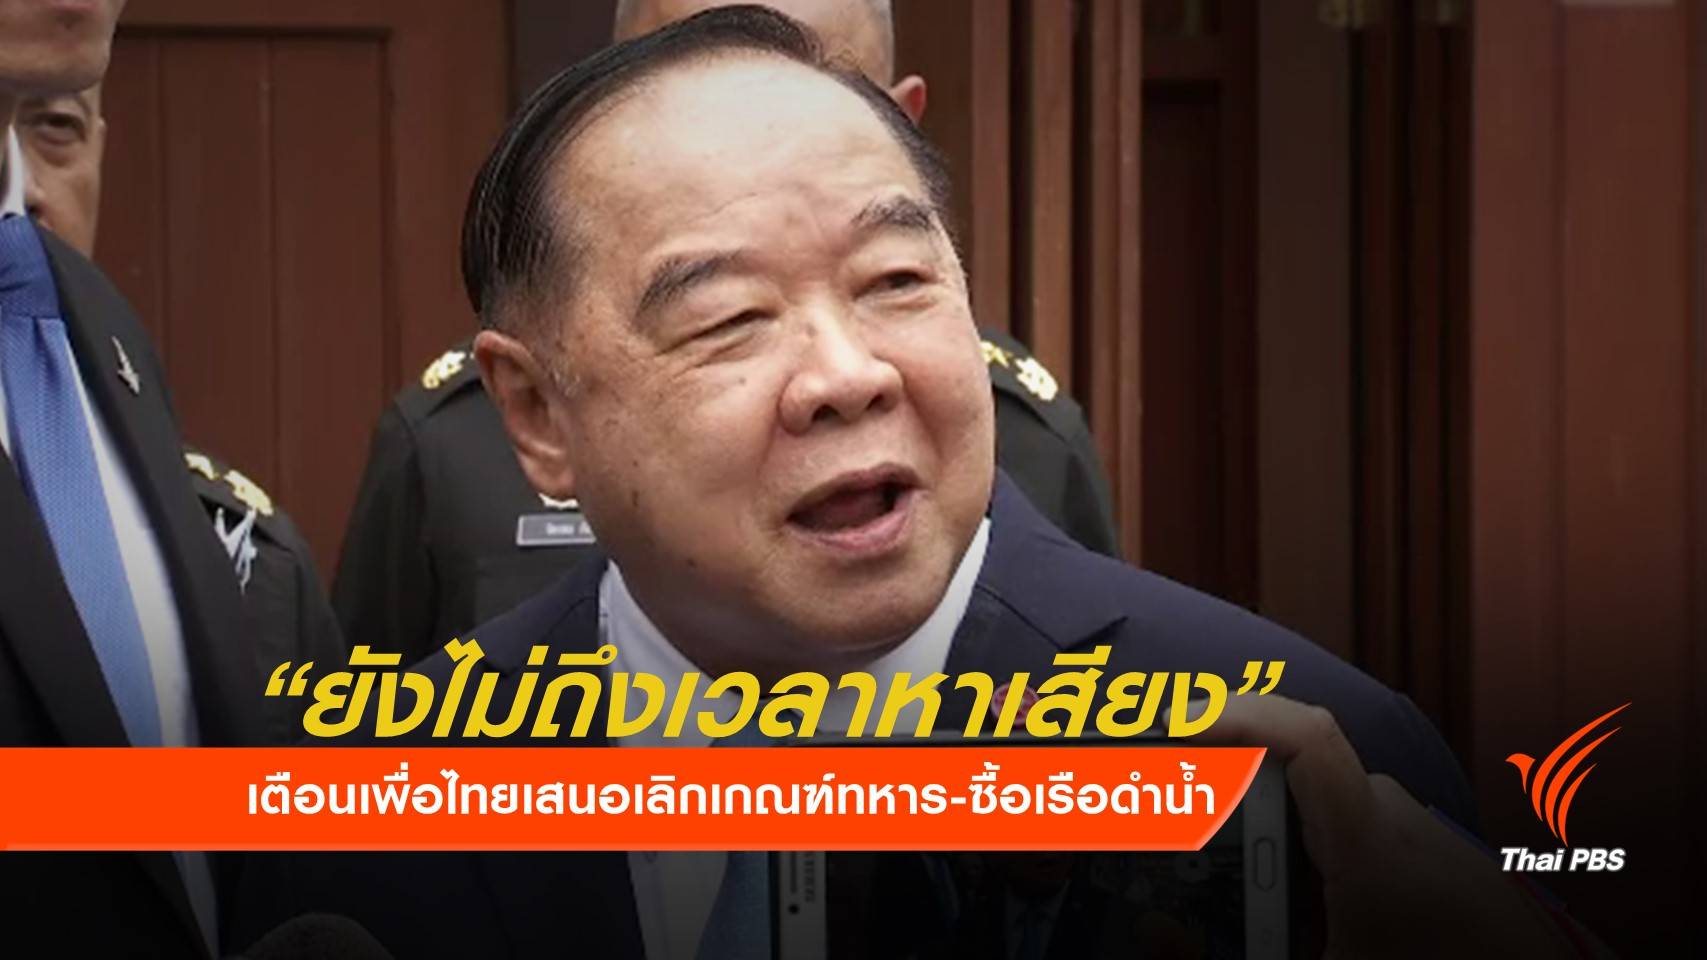 "พล.อ.ประวิตร" ชี้ปฏิรูปกองทัพไว้คุยตอน "เพื่อไทย" เป็นรัฐบาล